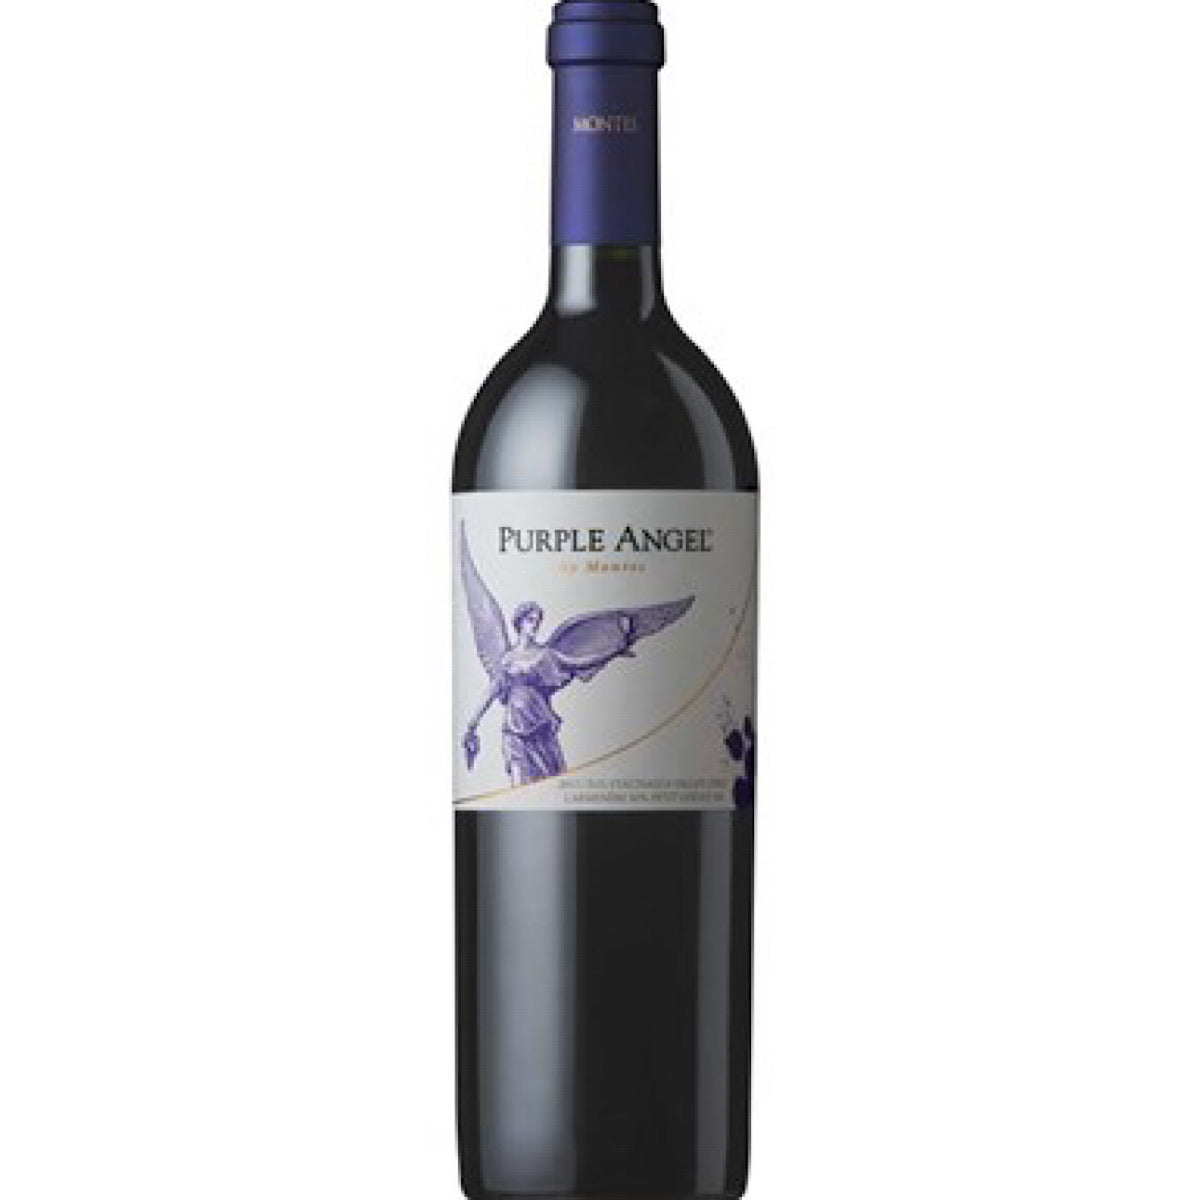 Purple Angel Montes 2020 6 Bottle Case 75cl